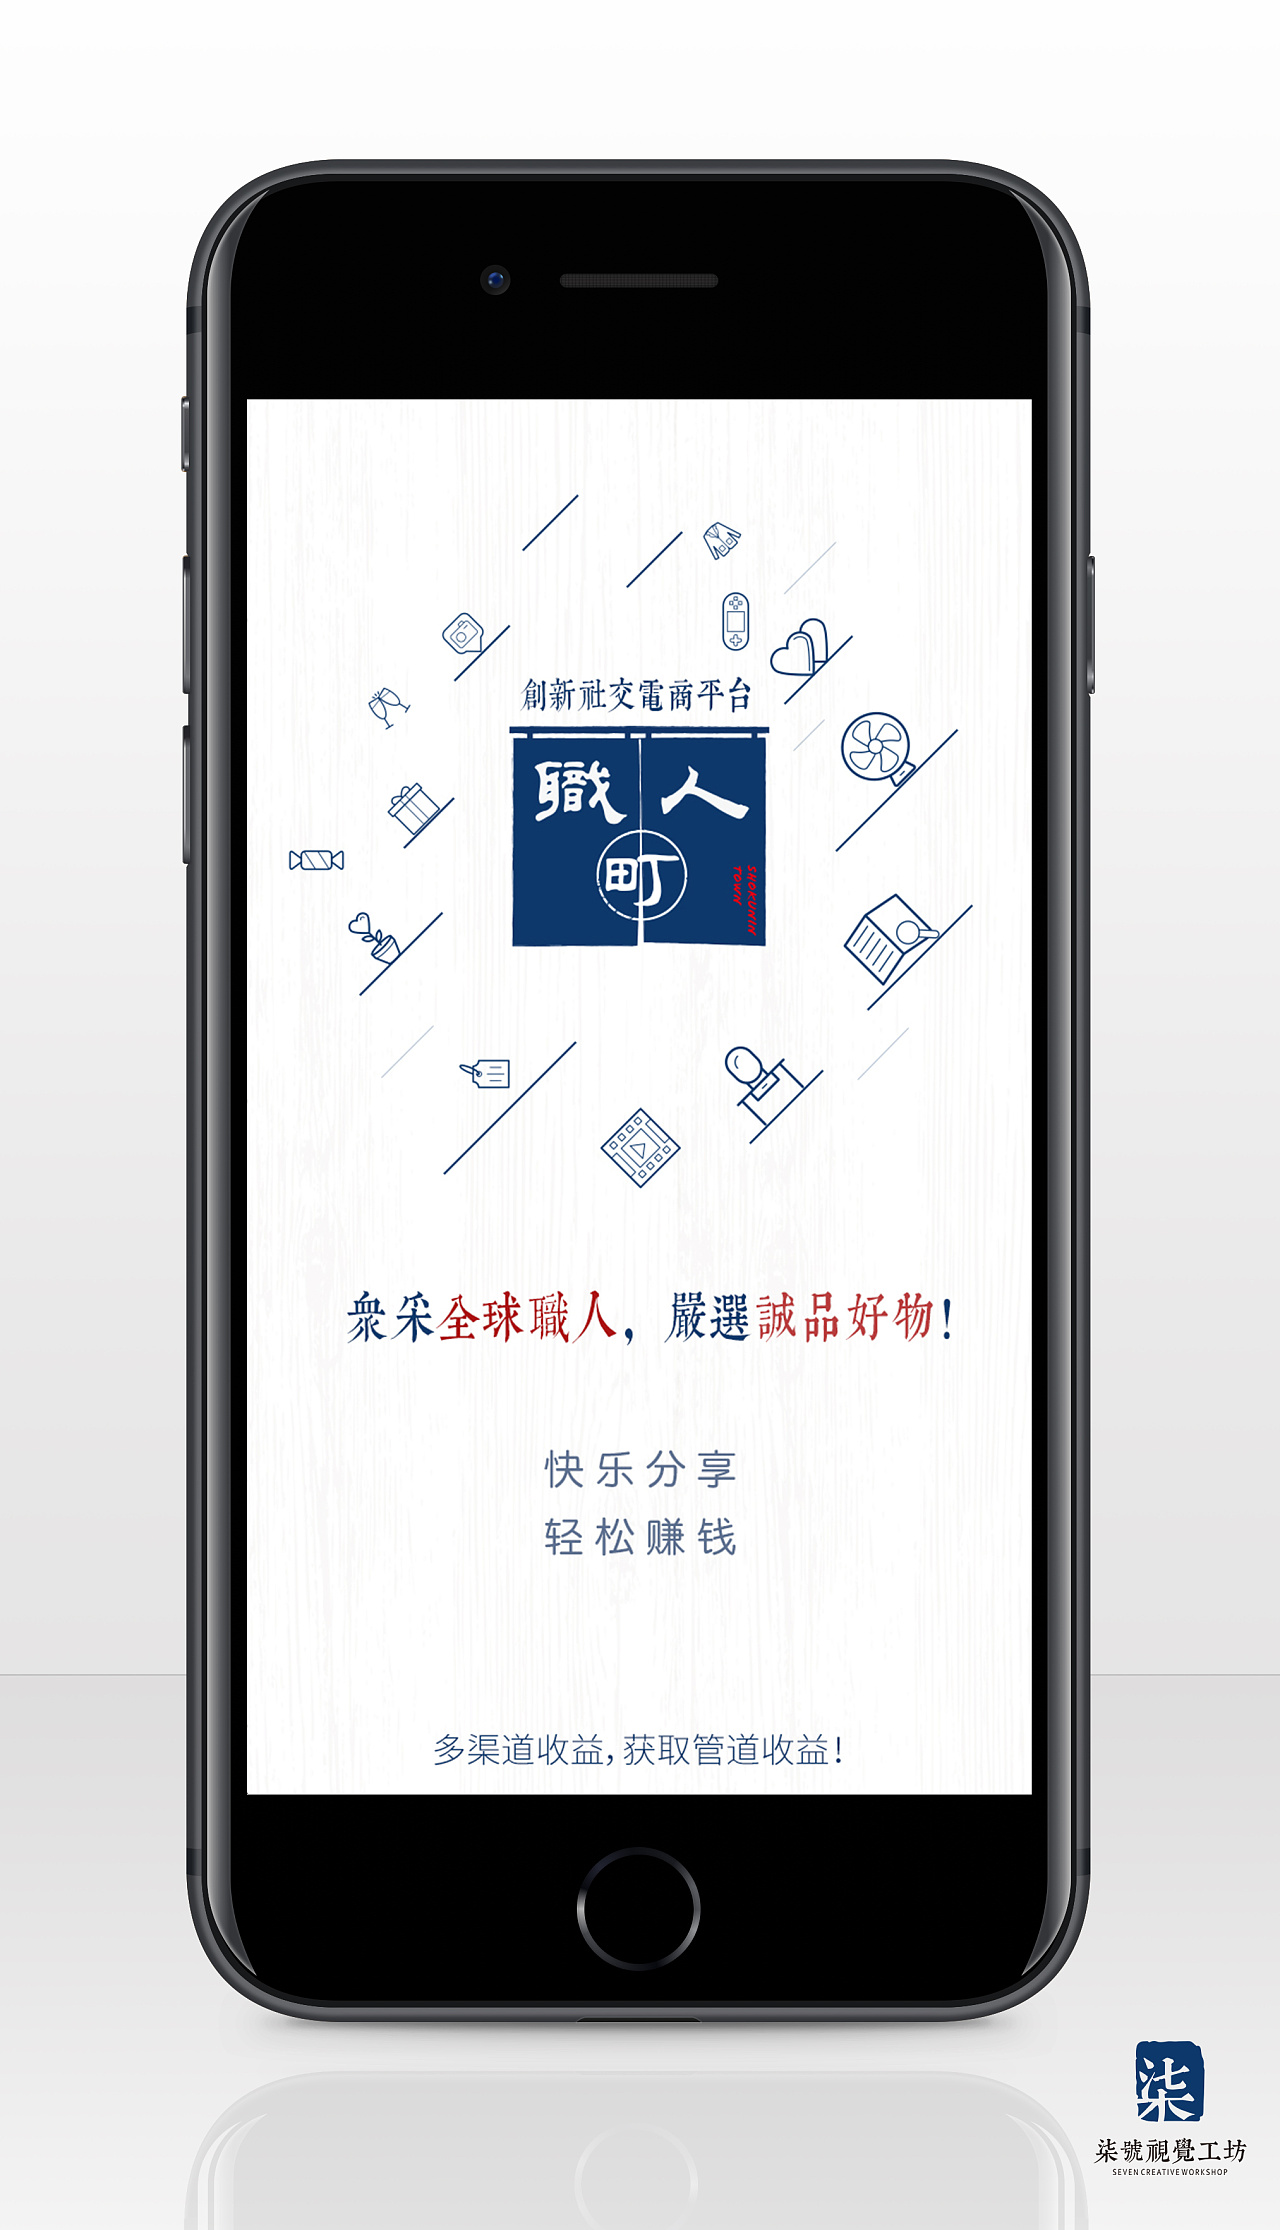 社交电商平台 推广宣传手机朋友圈海报